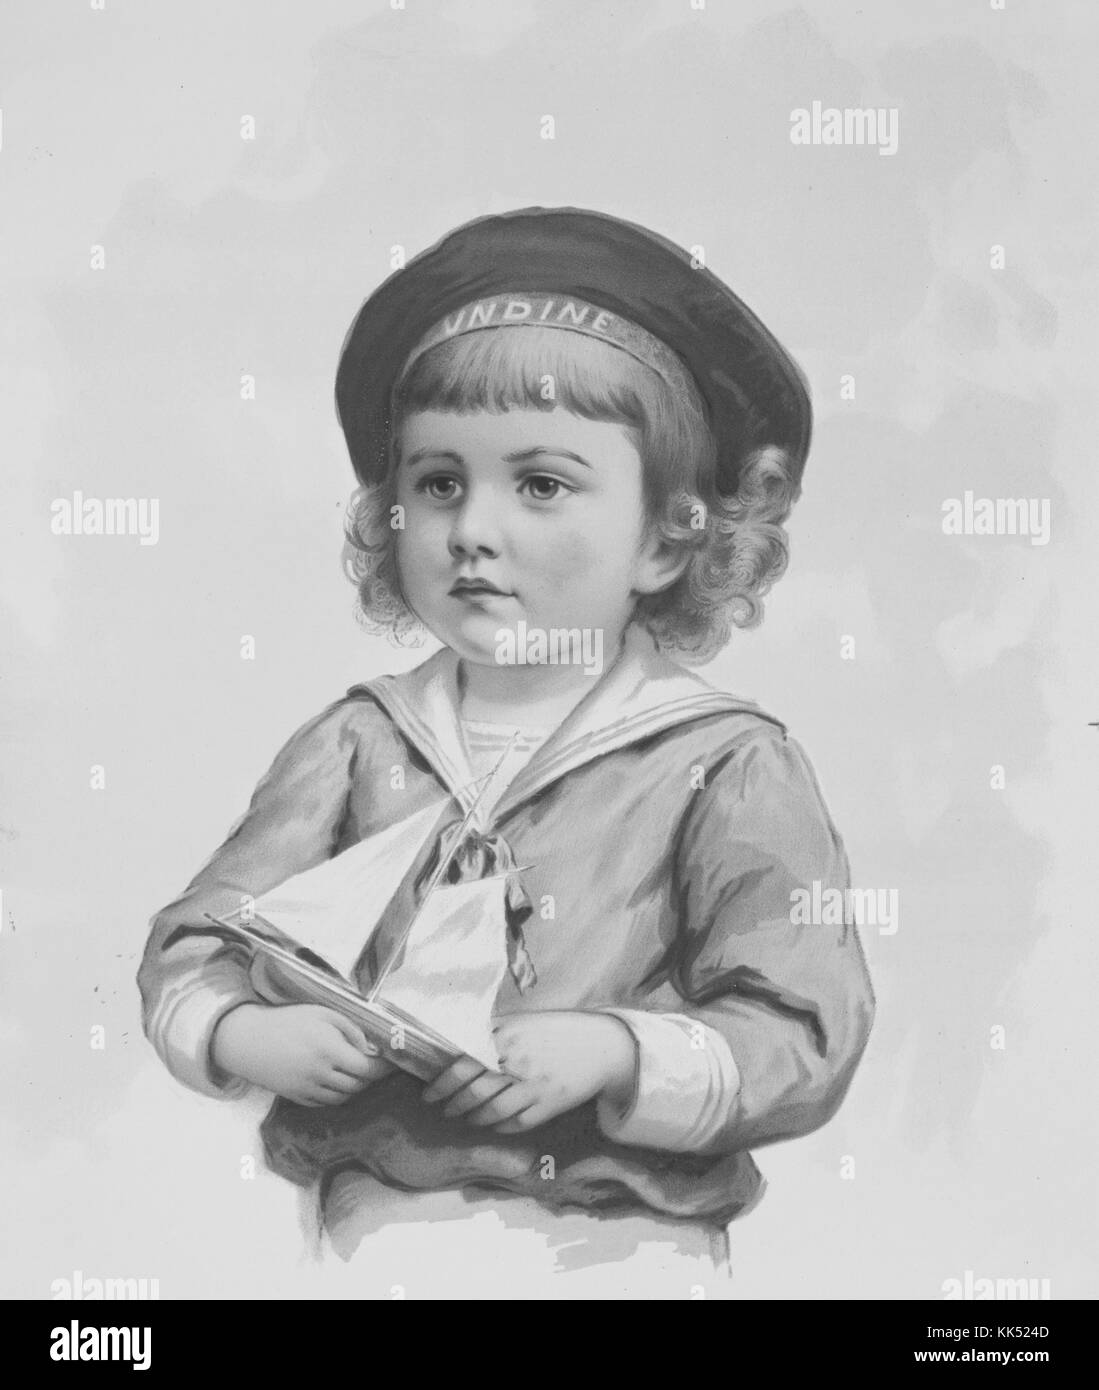 Stampa colorata di una giovane ragazza in un vestito da marinaio, in possesso di una barca a vela giocattolo, intitolata 'Our Young Commodore', di Ida Waugh, pubblicata da L Prang and Company, 1900. Dalla Biblioteca pubblica di New York. Foto Stock